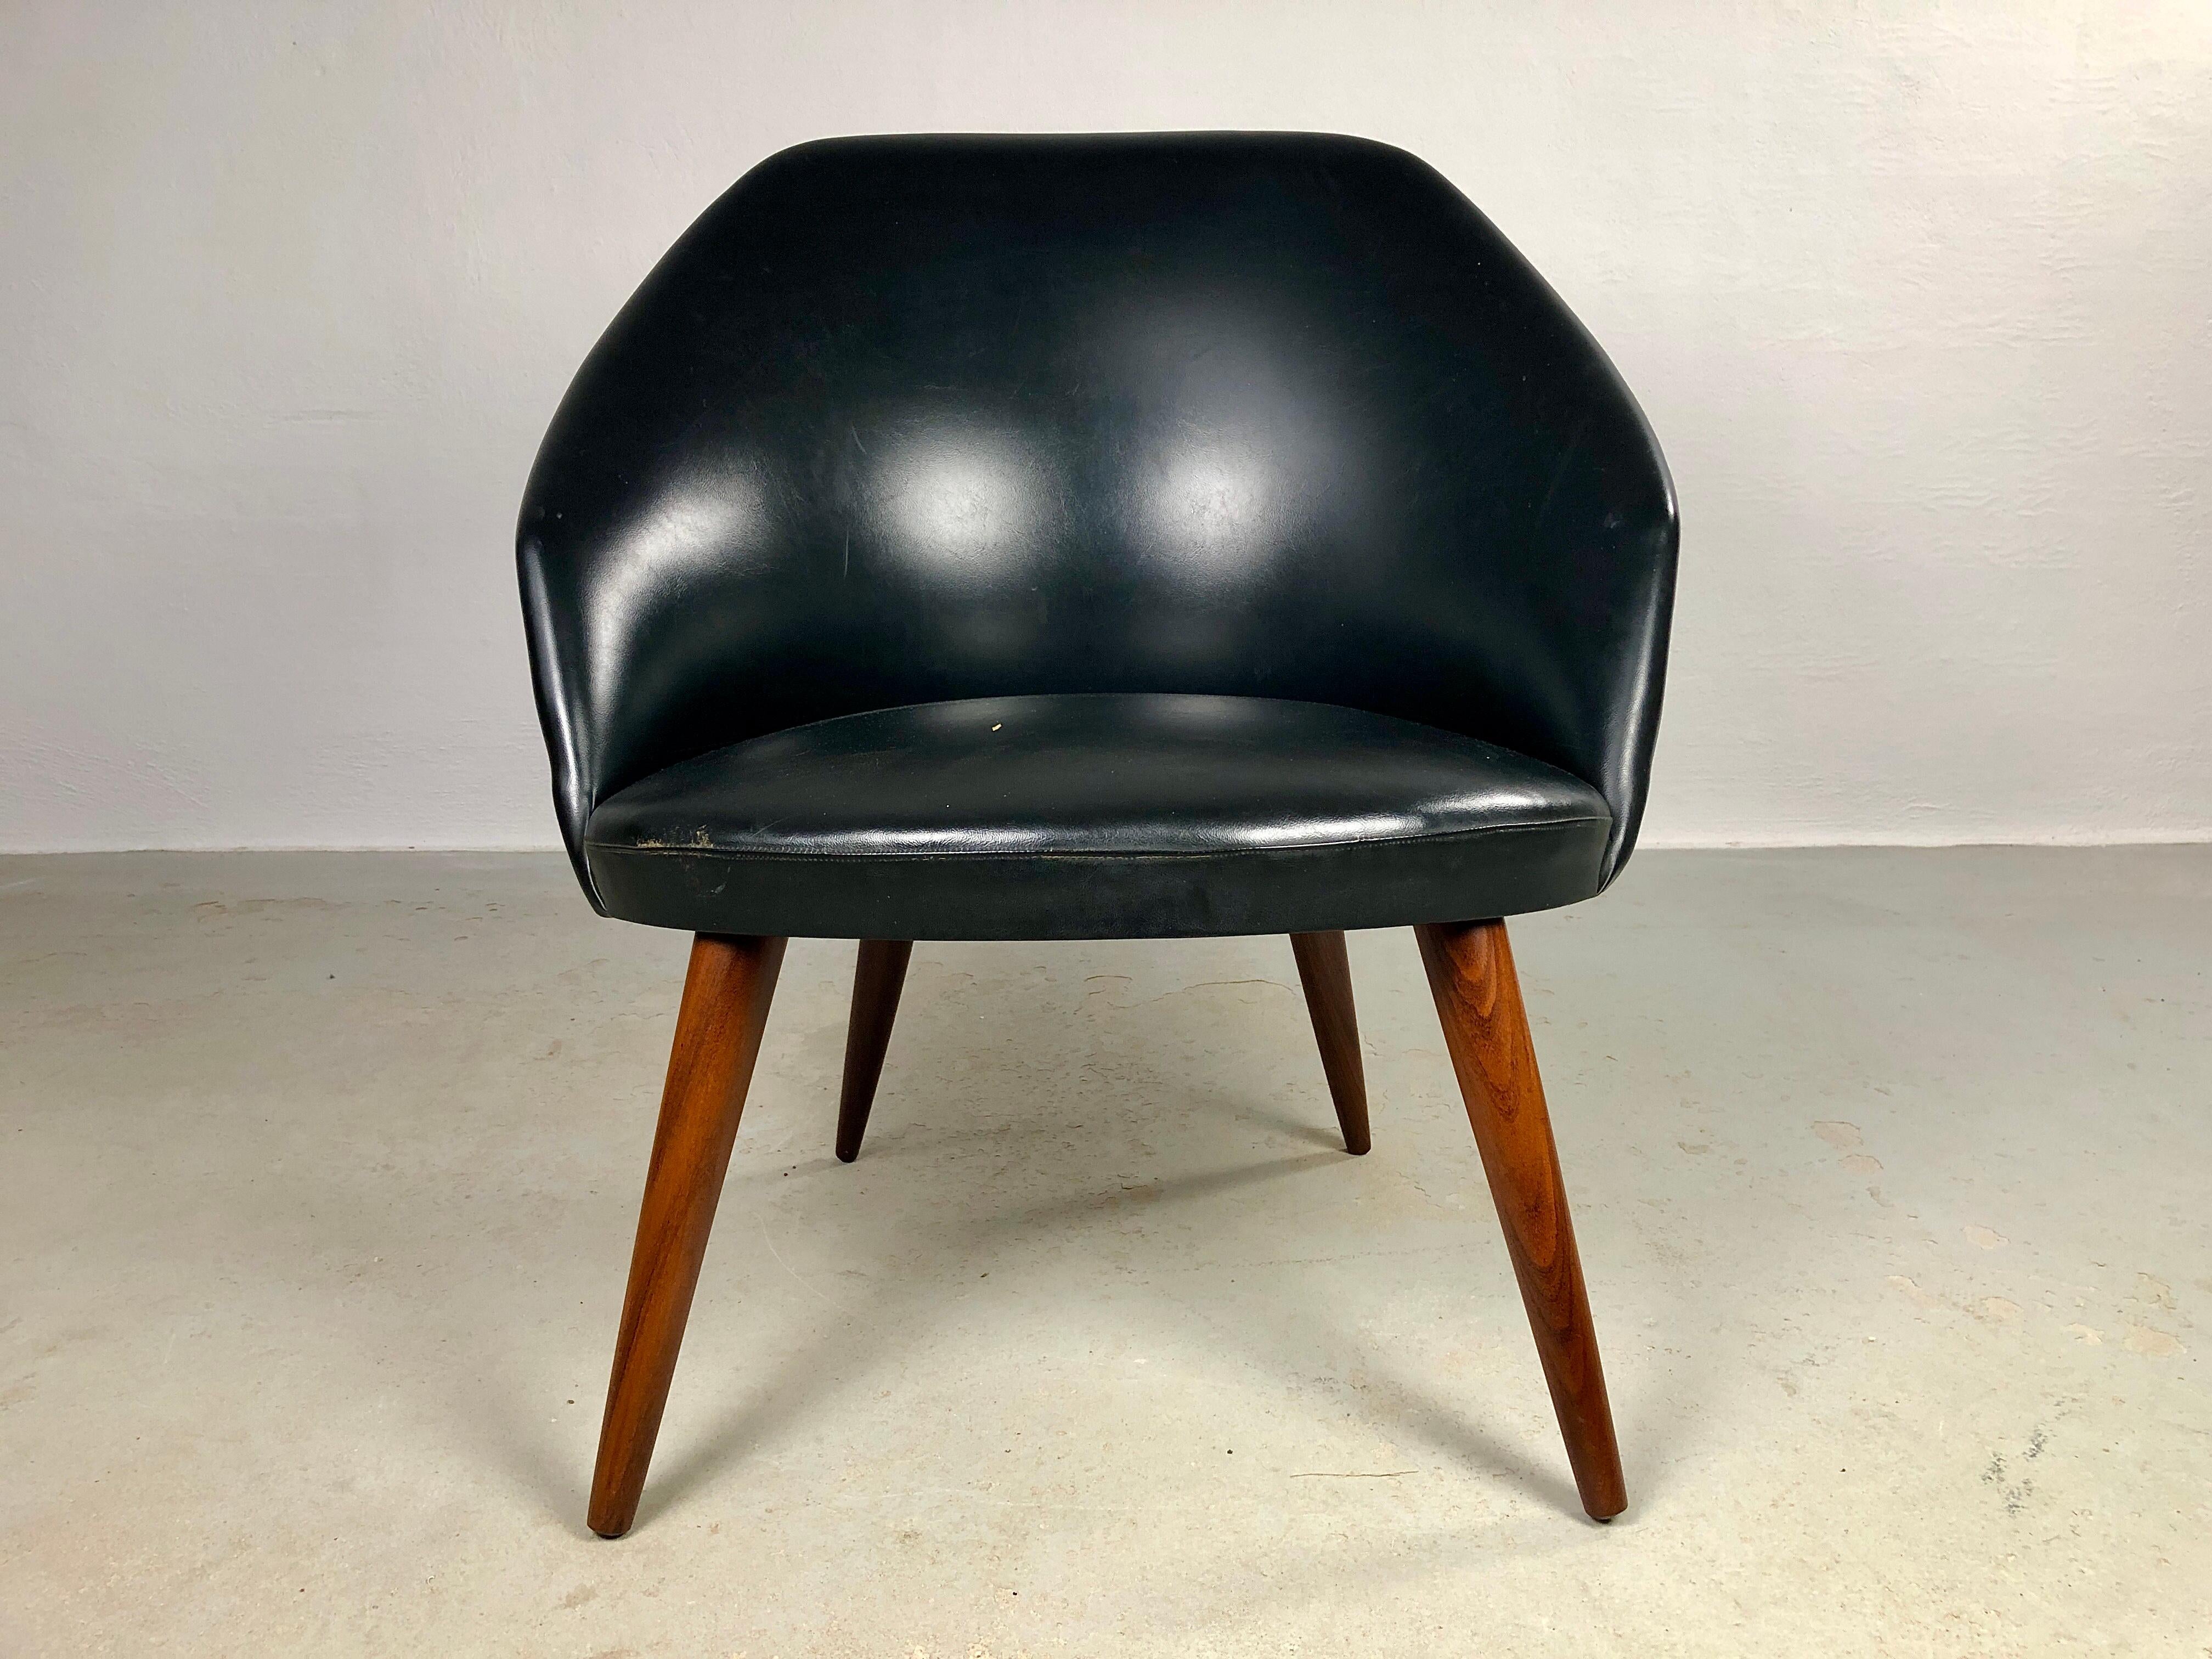 Vollständig restaurierter dänischer Loungesessel, neu gepolstert mit schwarzem Leder.

Der Loungesessel zeichnet sich durch weiche, organische Formen aus, vom runden Sitz bis zur abgerundeten Rückenlehne.

Der Stuhl befindet sich in einem